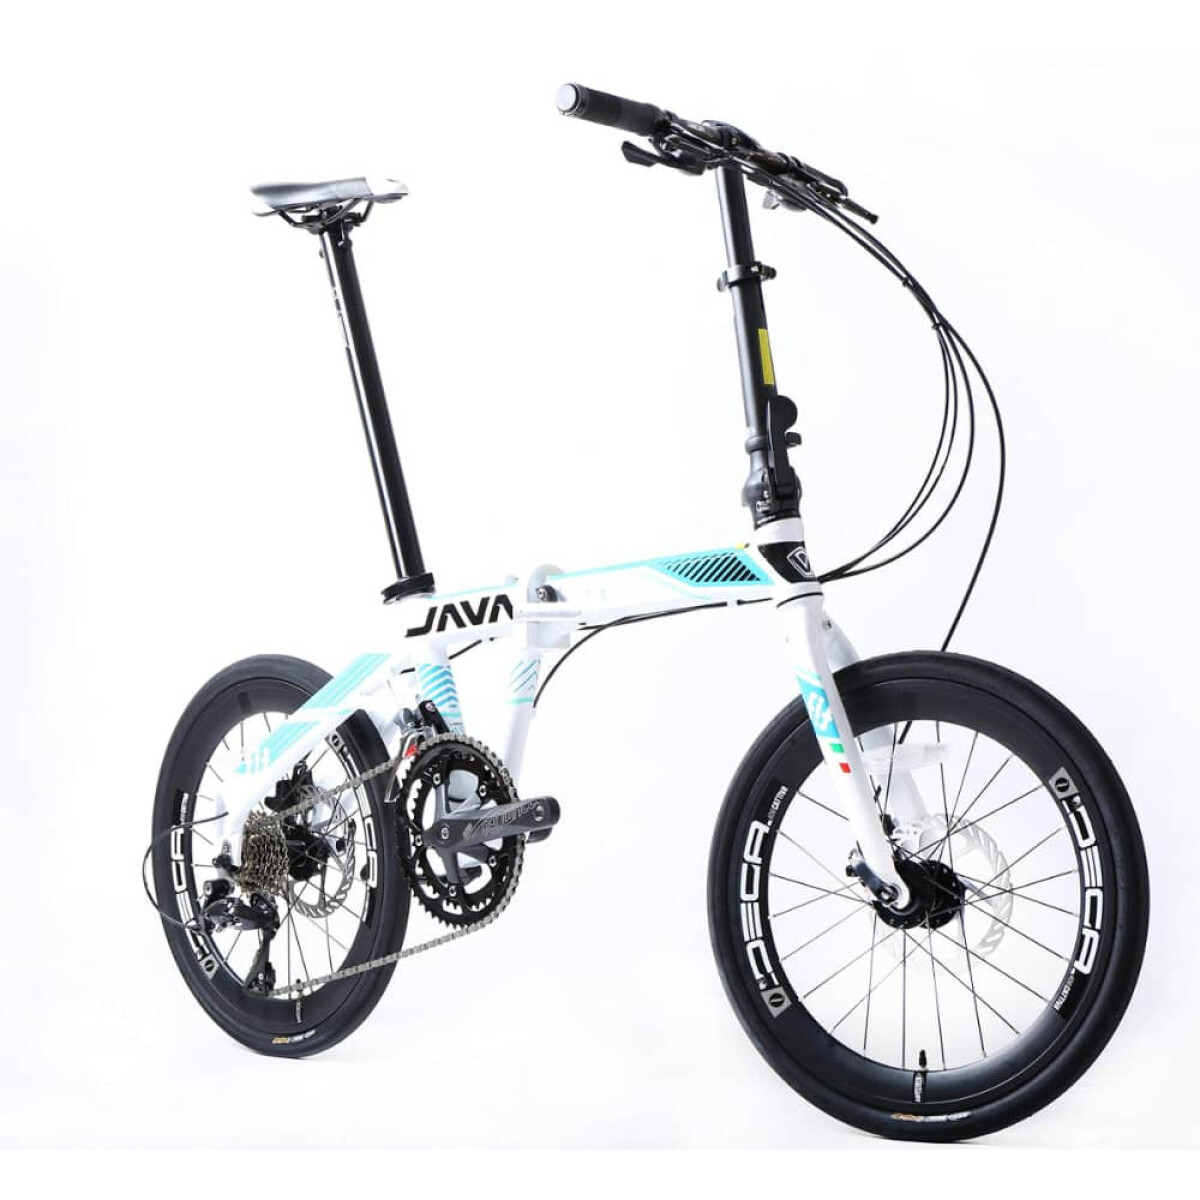 Java - Bicicleta de Ciudad- Plegable Fit. Rodado 20", 18 Velocidades., Color: Titanium. - 001 